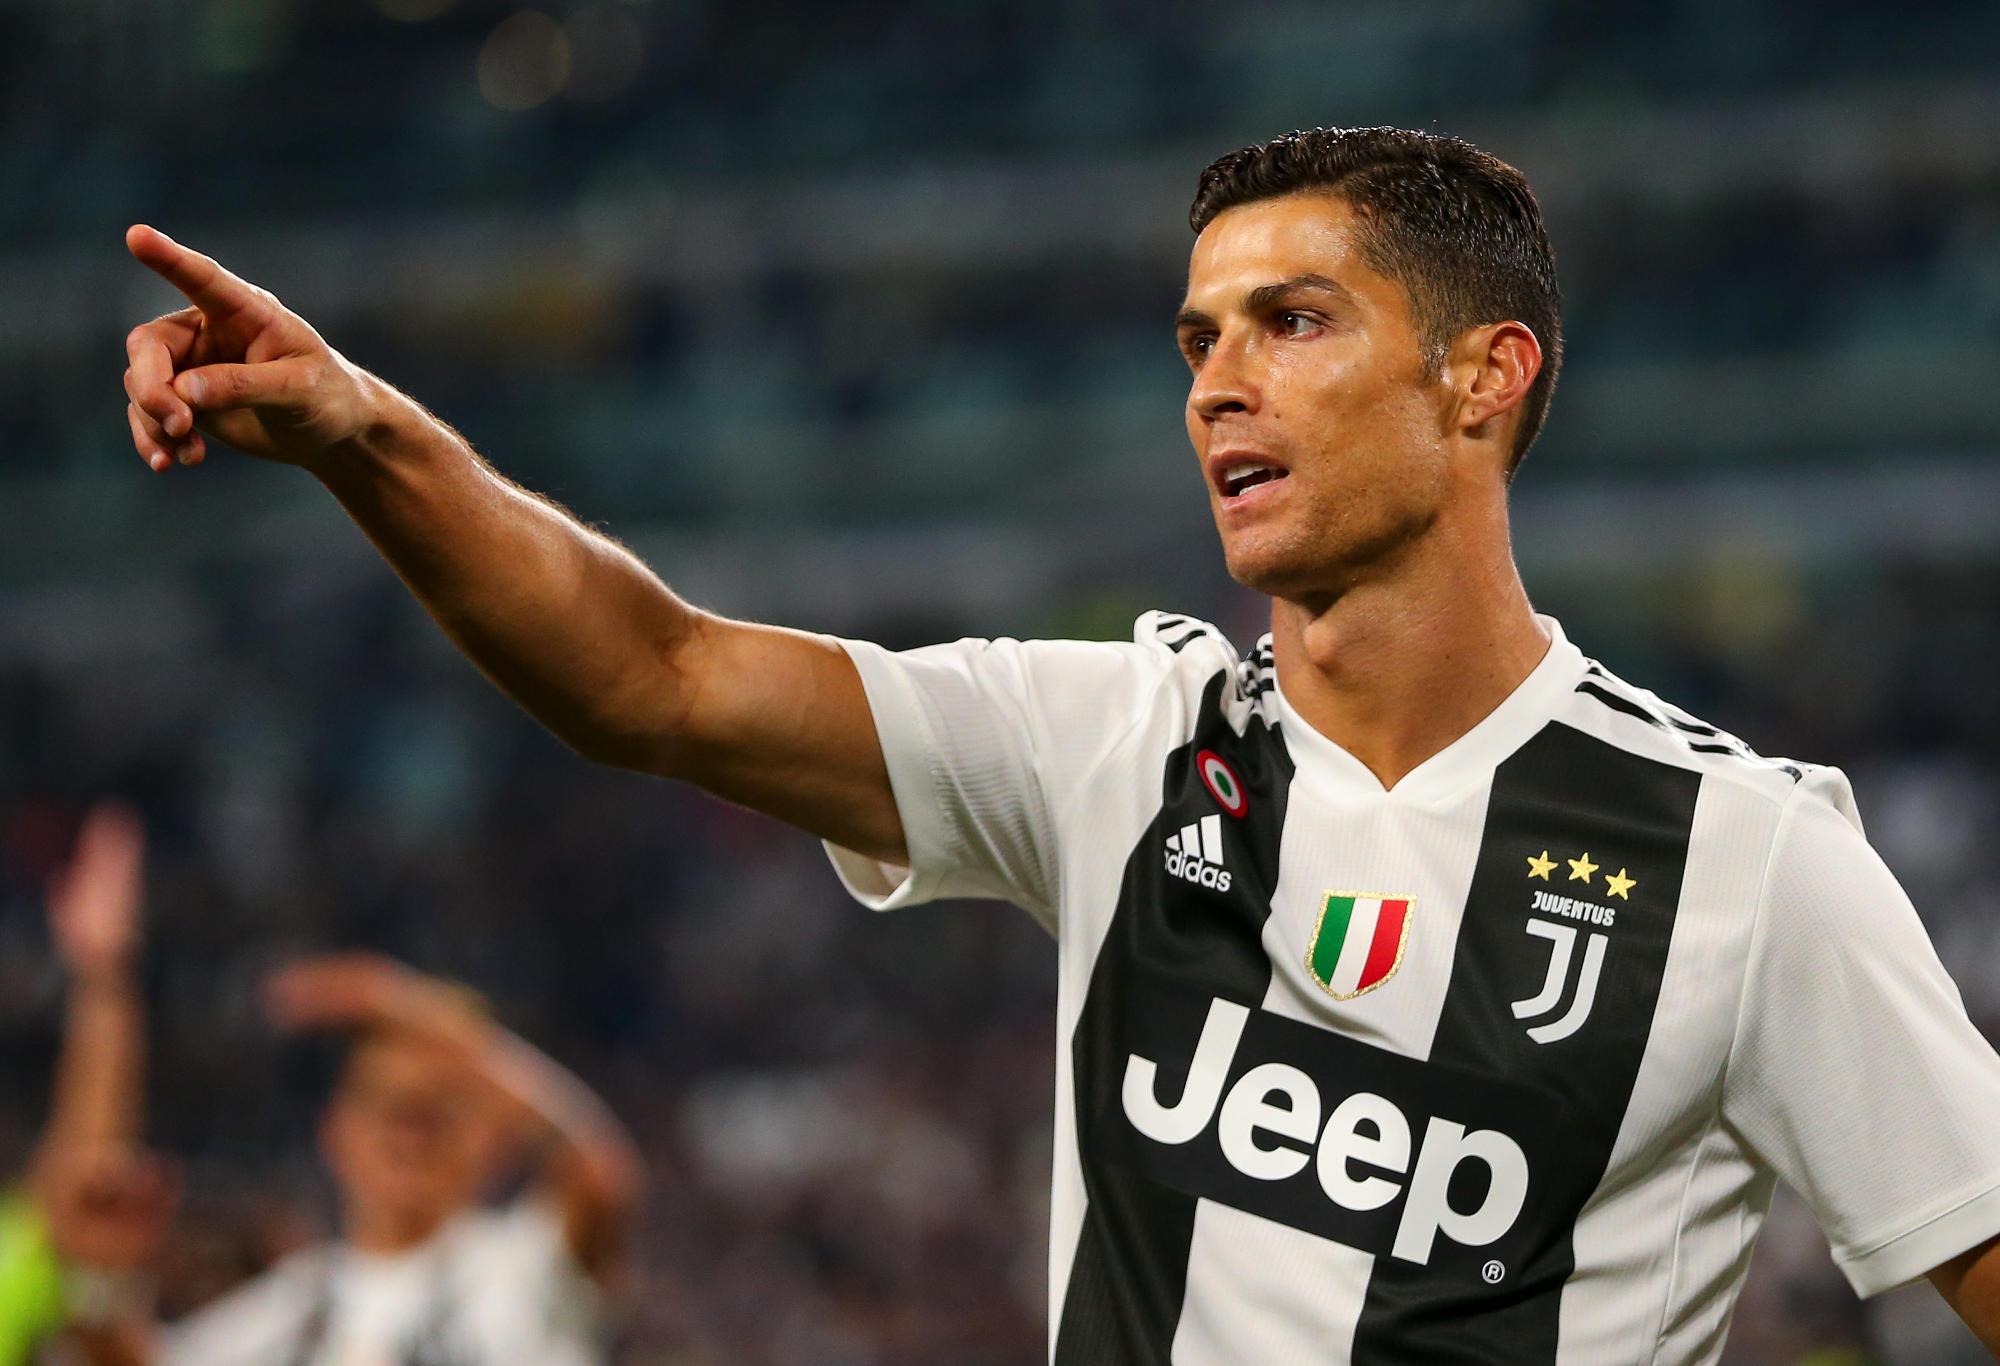 Cristiano Ronaldo z Juventusu podczas meczu Serie A pomiędzy Juventusem a Bologna FC na Allianz Stadium.